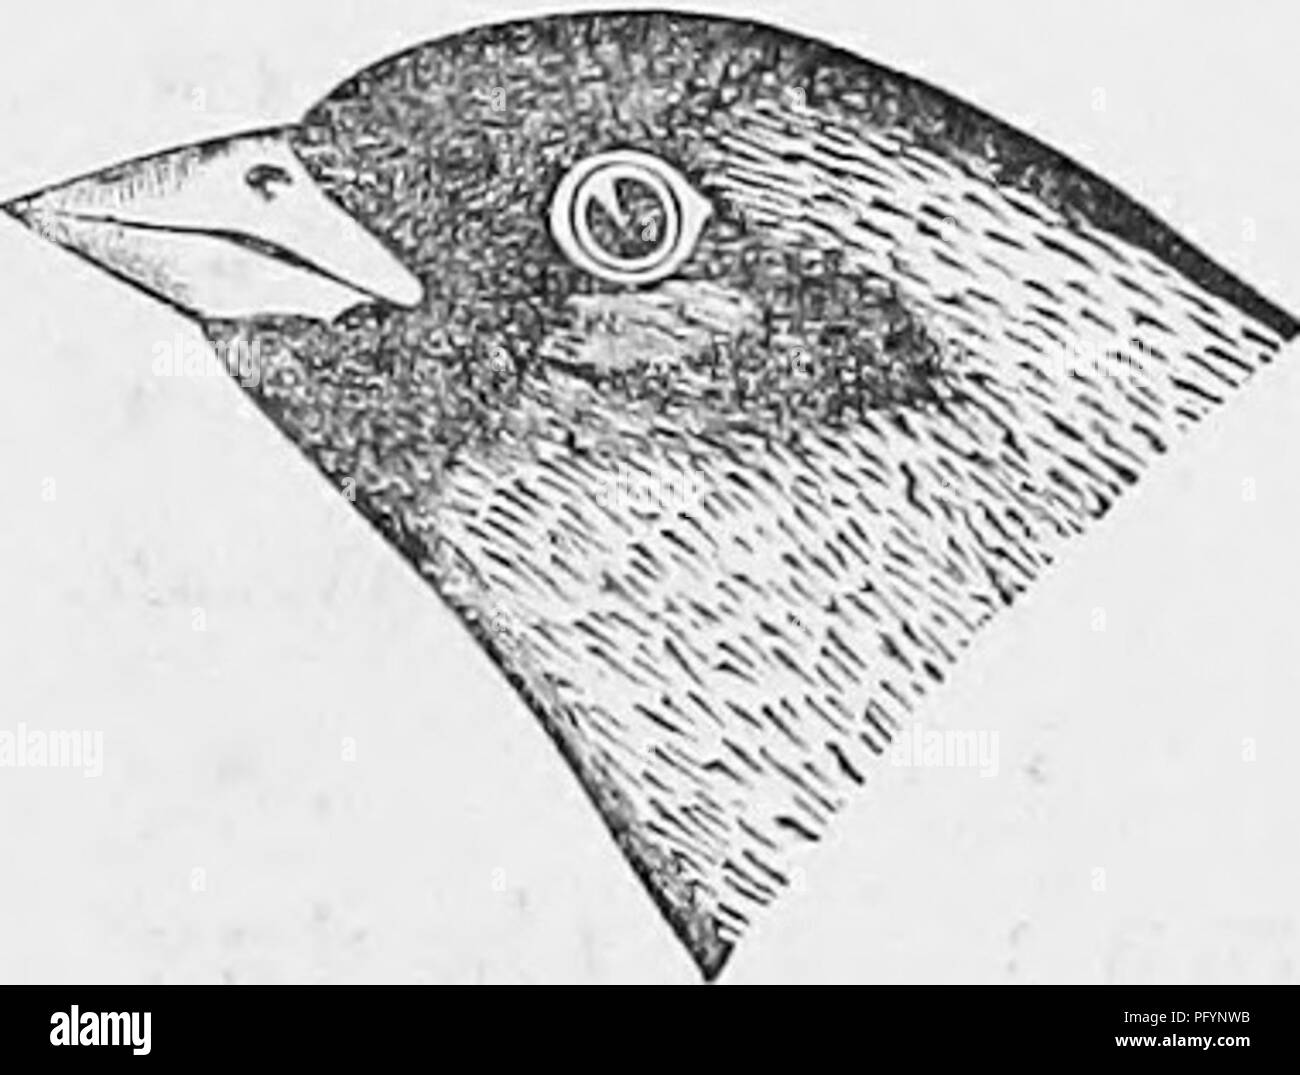 . Chiave per uccelli del Nord America; contenente un conciso conto di ogni specie di vita e di uccelli fossili attualmente conosciuti dal continente nord del Messico e Stati Uniti confine. Illustrato da 6 piastre di acciaio e verso l'alto di 250 xilografie. Gli uccelli. 144 FRINGILLIDiE, fringuelli, ecc. GEN. 74. ^ '1^". Fig. 87. Nero-chinnecl Sparrow. la coda (completamente a 3), che supera di molto il vfings (2J) ; il giovane mancanza il nero sul viso, e hanno la corona wa,shcd con ashy-marrone, il Bill dusky sopra; ma può essere conosciuto dalla lunghezza della coda. Messico, a nord di Colorado Valley; Capo San Lucas. (S Foto Stock